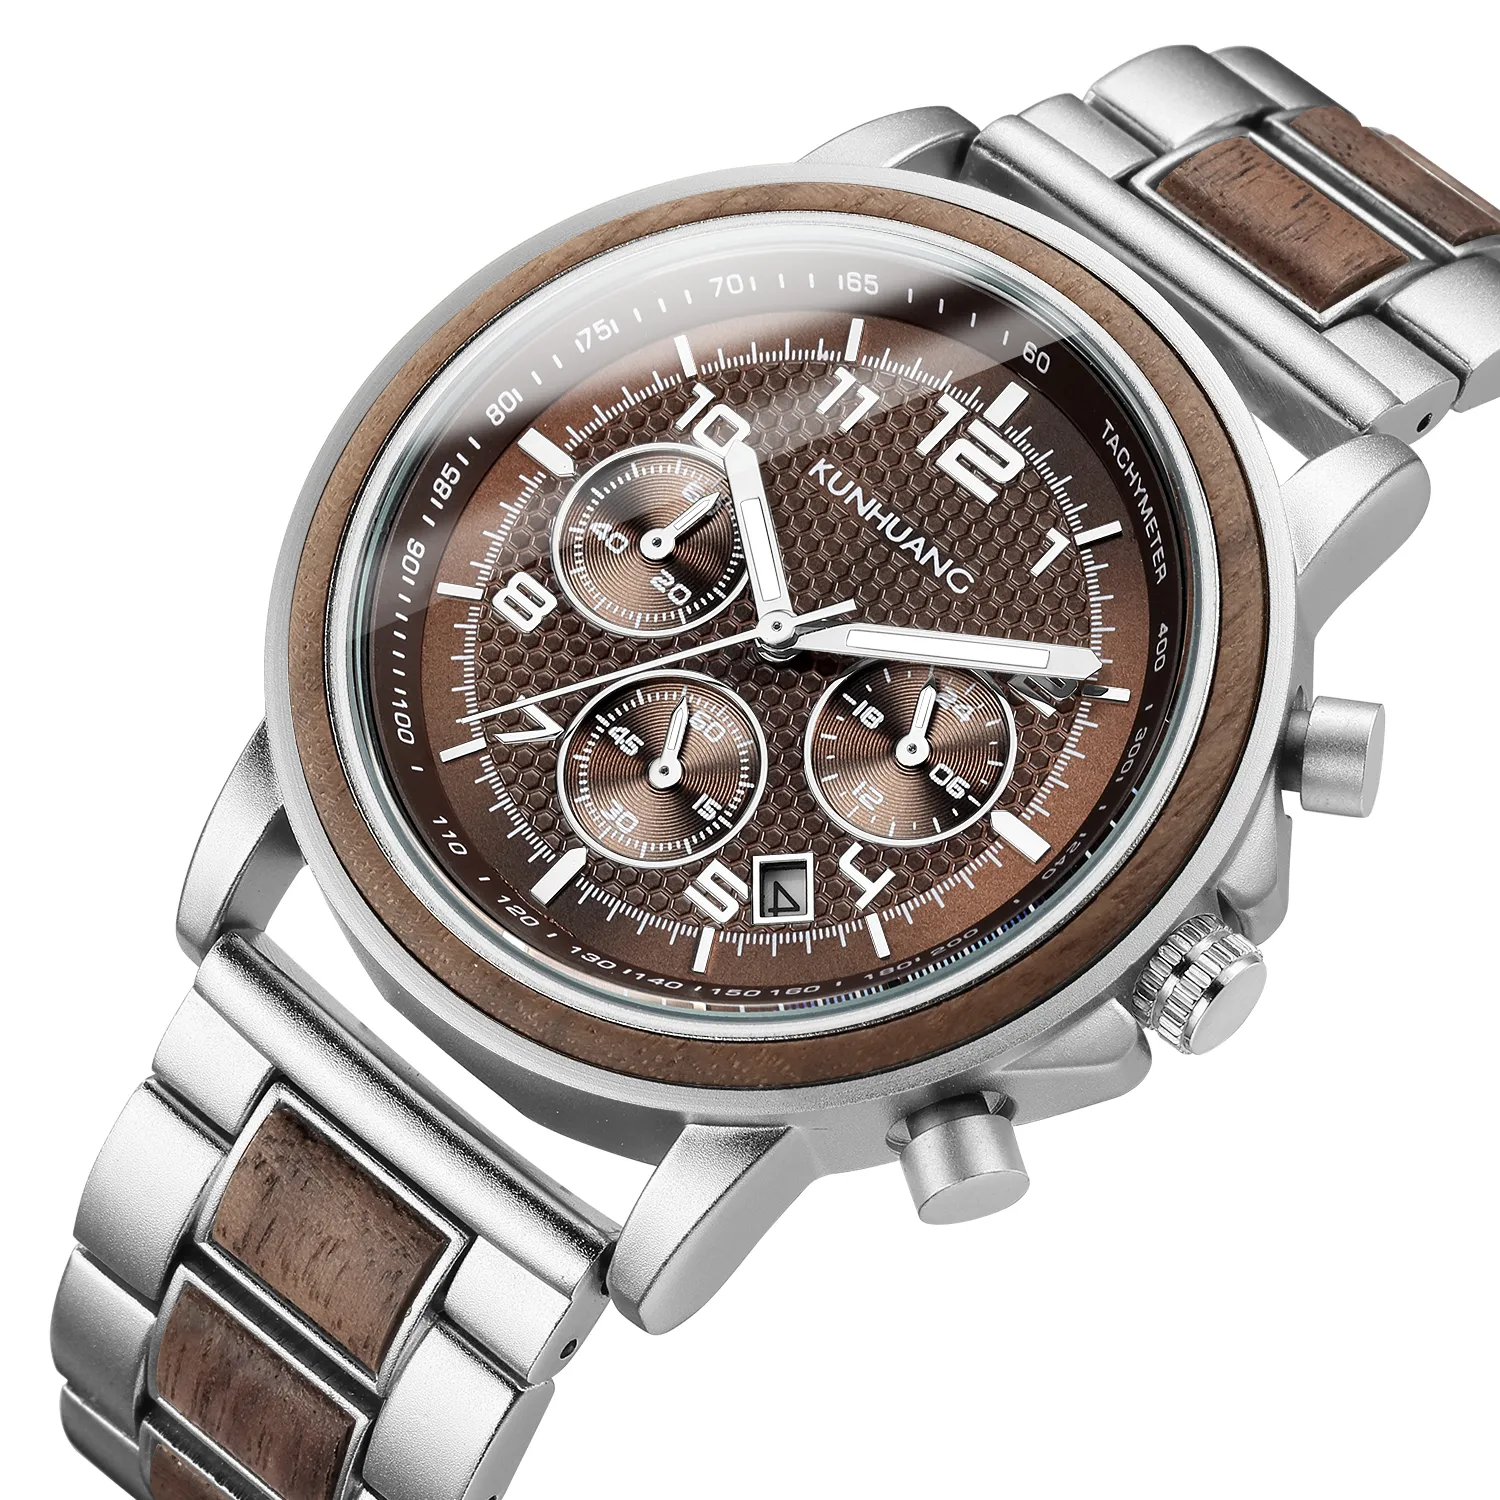 Marque de luxe hommes bois quartz montre-bracelet hommes sport montre étanche homme chronographe en bois montres 1997